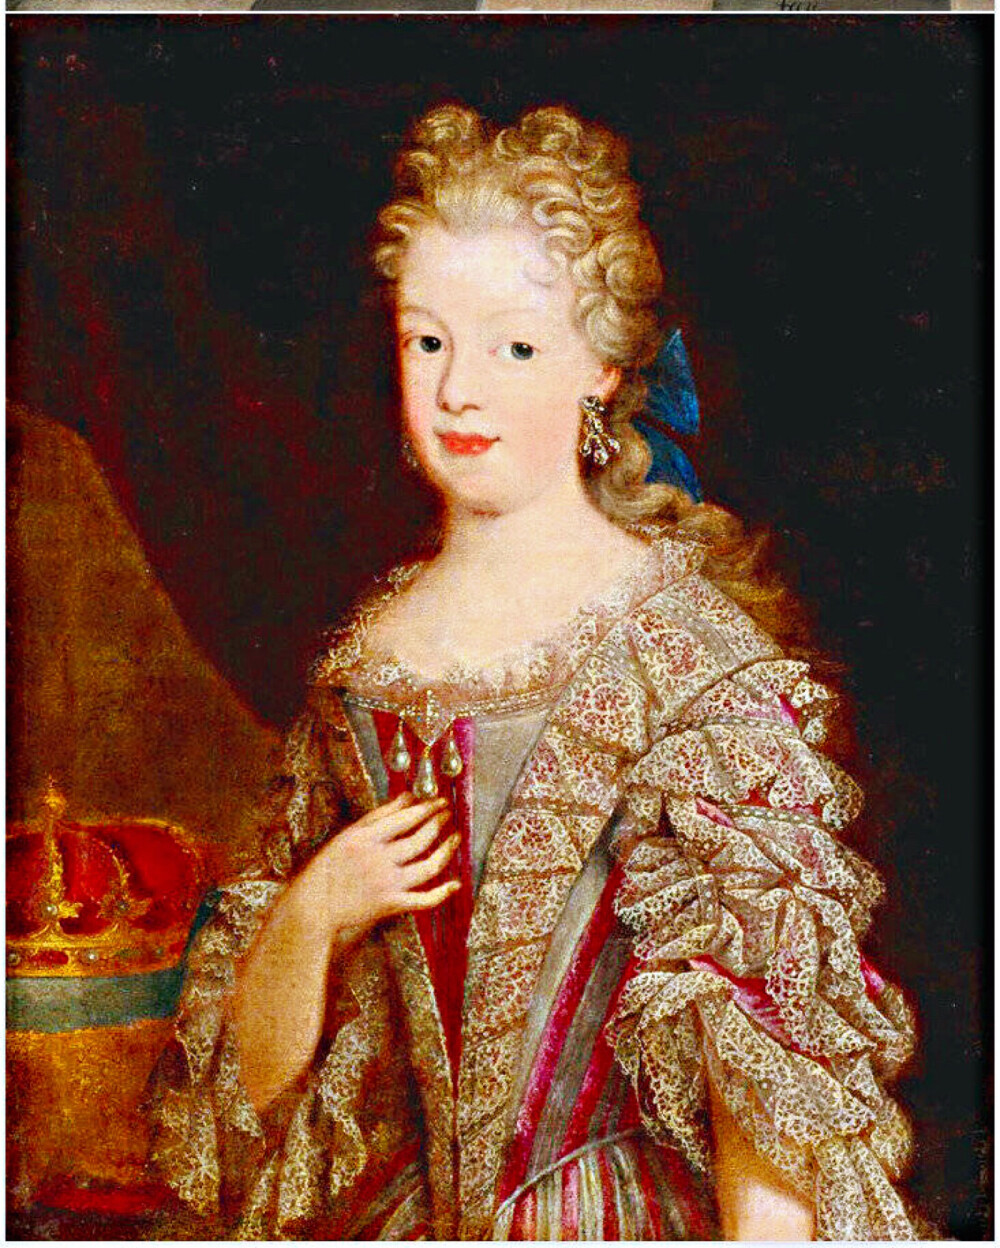 西班牙国王腓力五世的首任妻子，萨伏依的玛丽亚·路易莎。虽然她一生短暂，却留下了很多画像。这位活泼的女子热衷于各种娱乐，其中就包括打扮，所以我们能看到她那一套又一套绚丽至极的华服。十八世纪初的奢靡风尚在她身上体现得可谓淋漓尽致。